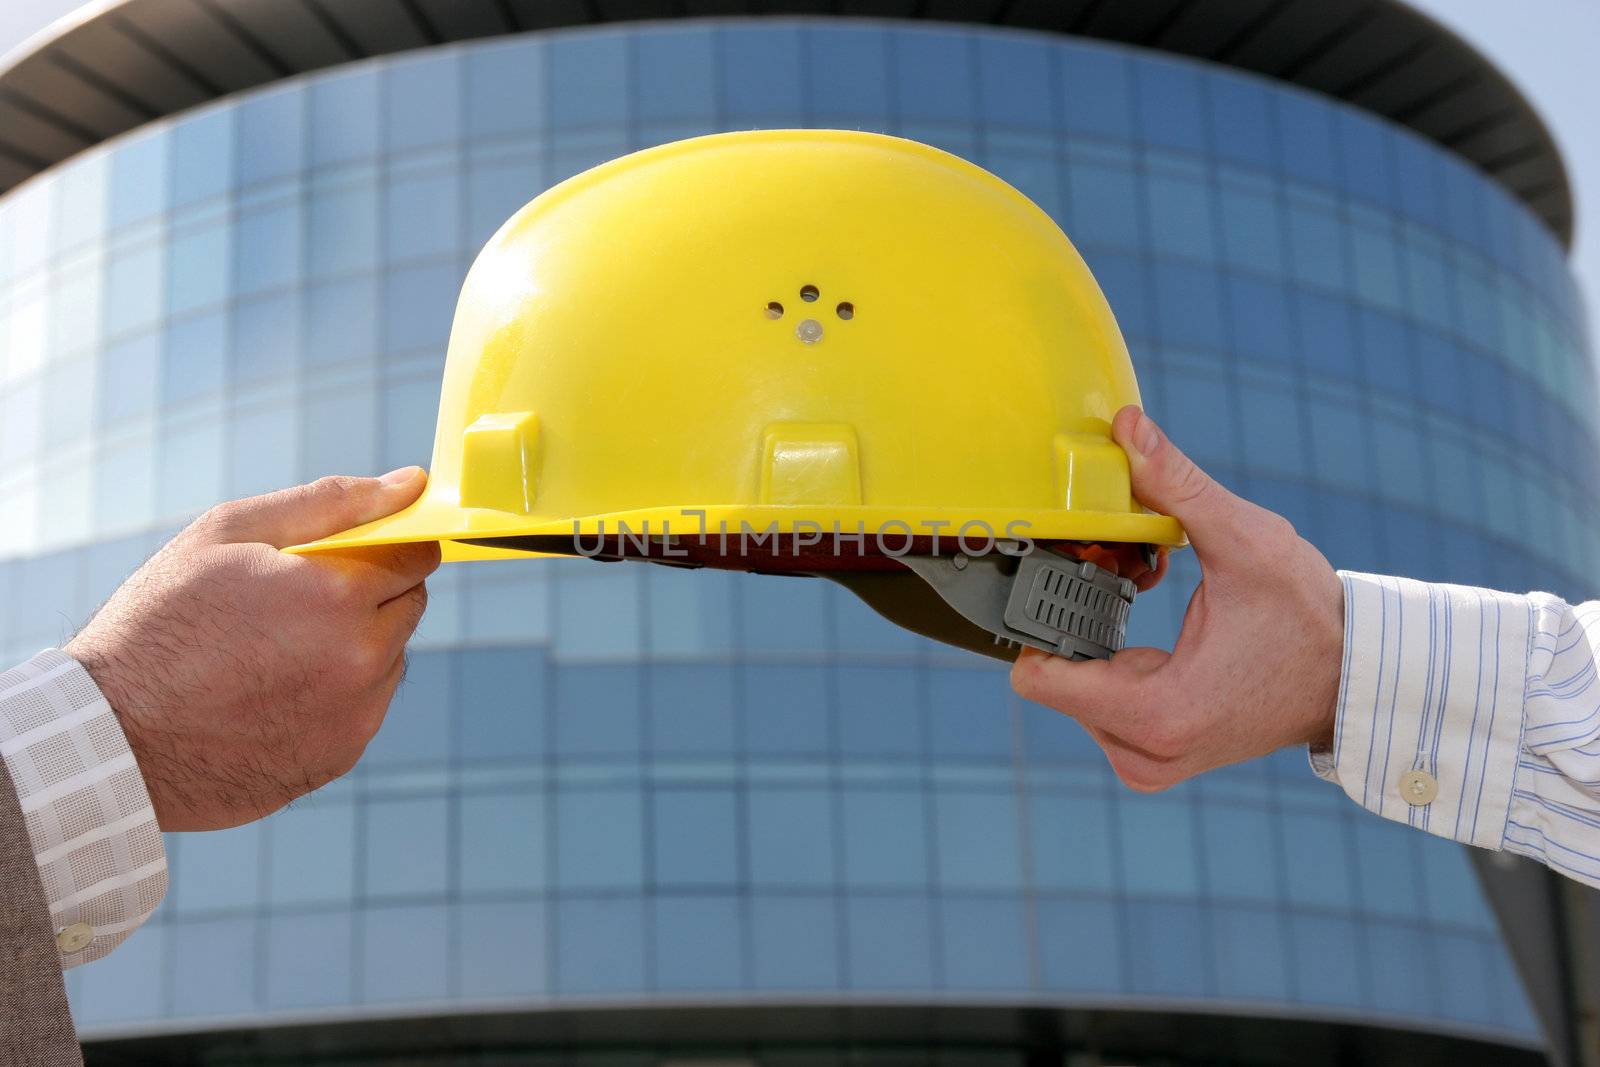 A protective engineer's helmet, change